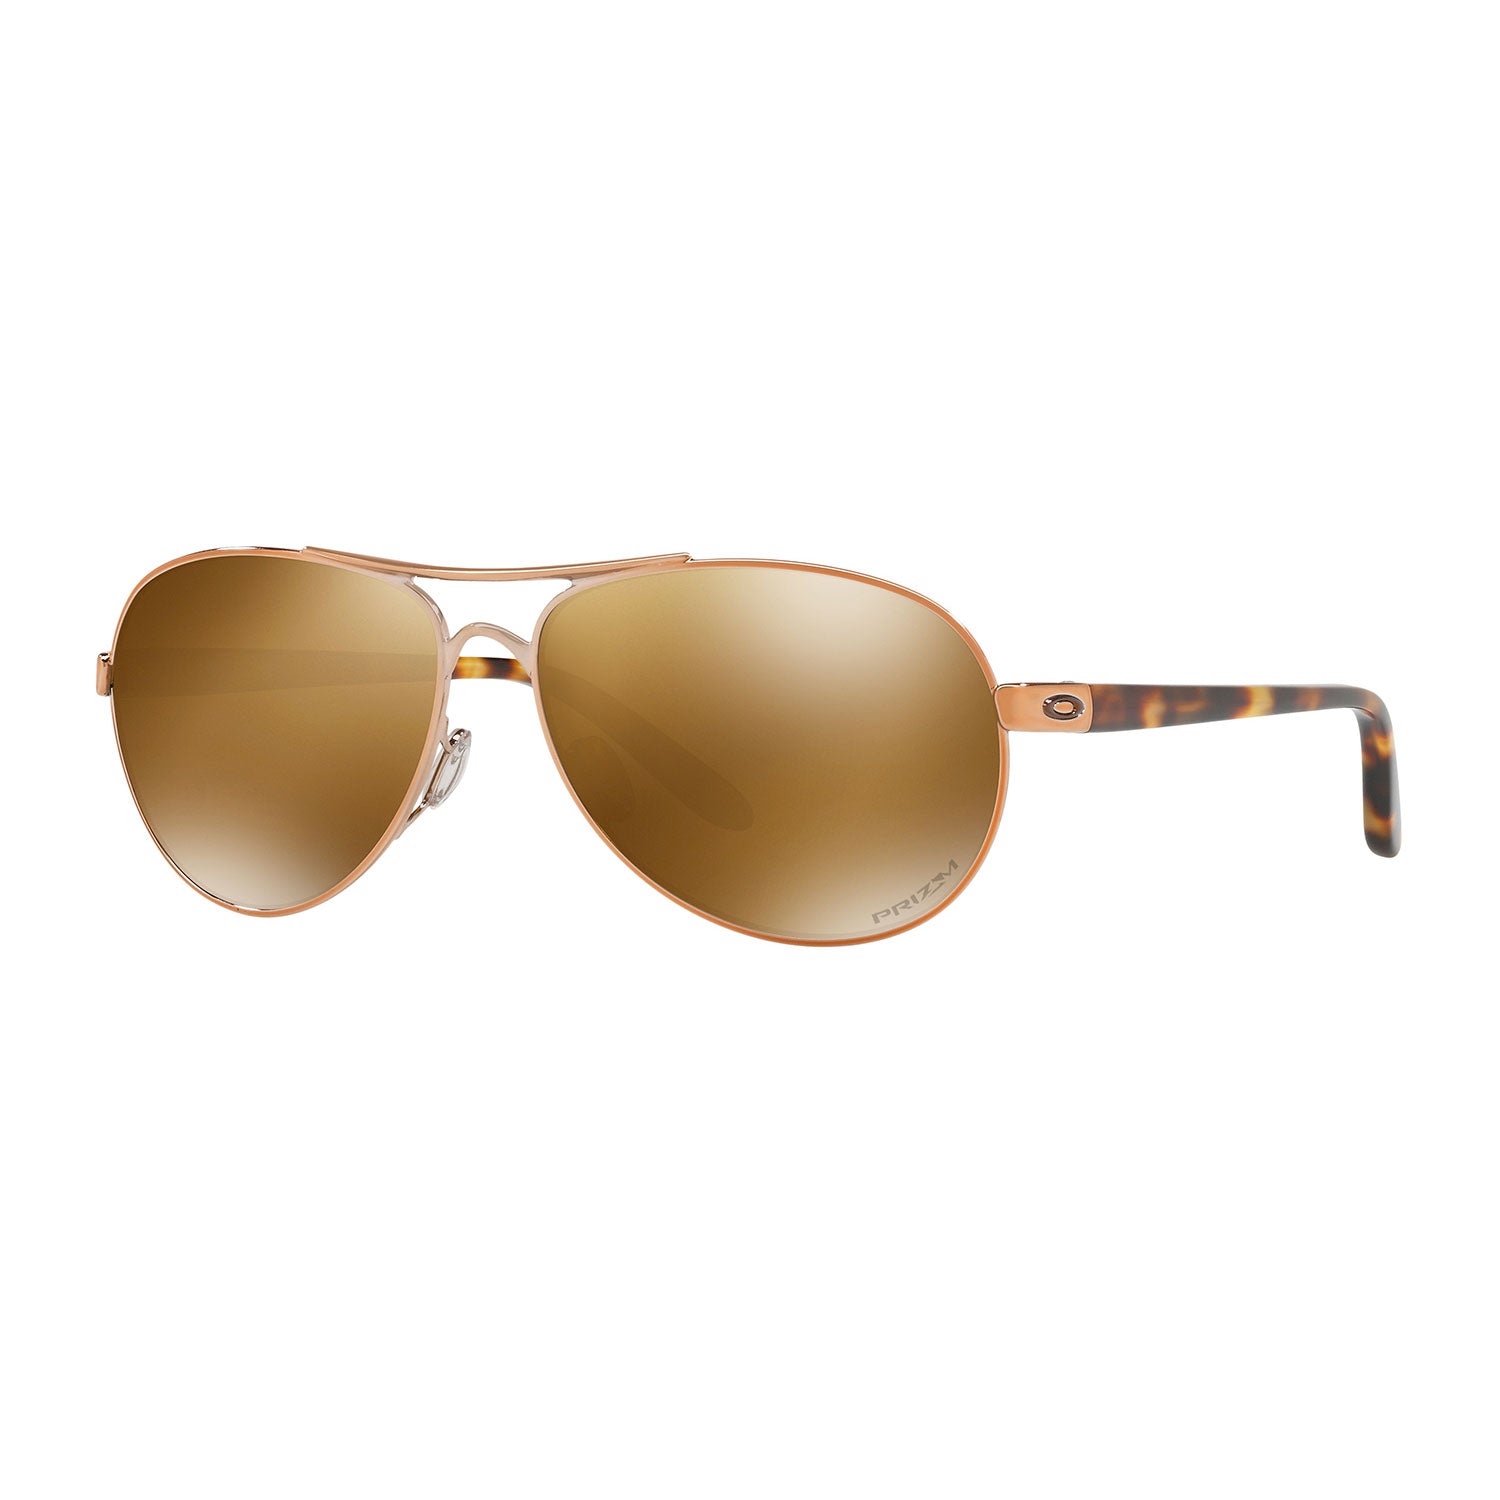 Oakley Lunettes de soleil Feedback - Rose Gold - Lentilles VR50 Brown  Gradient - Femme